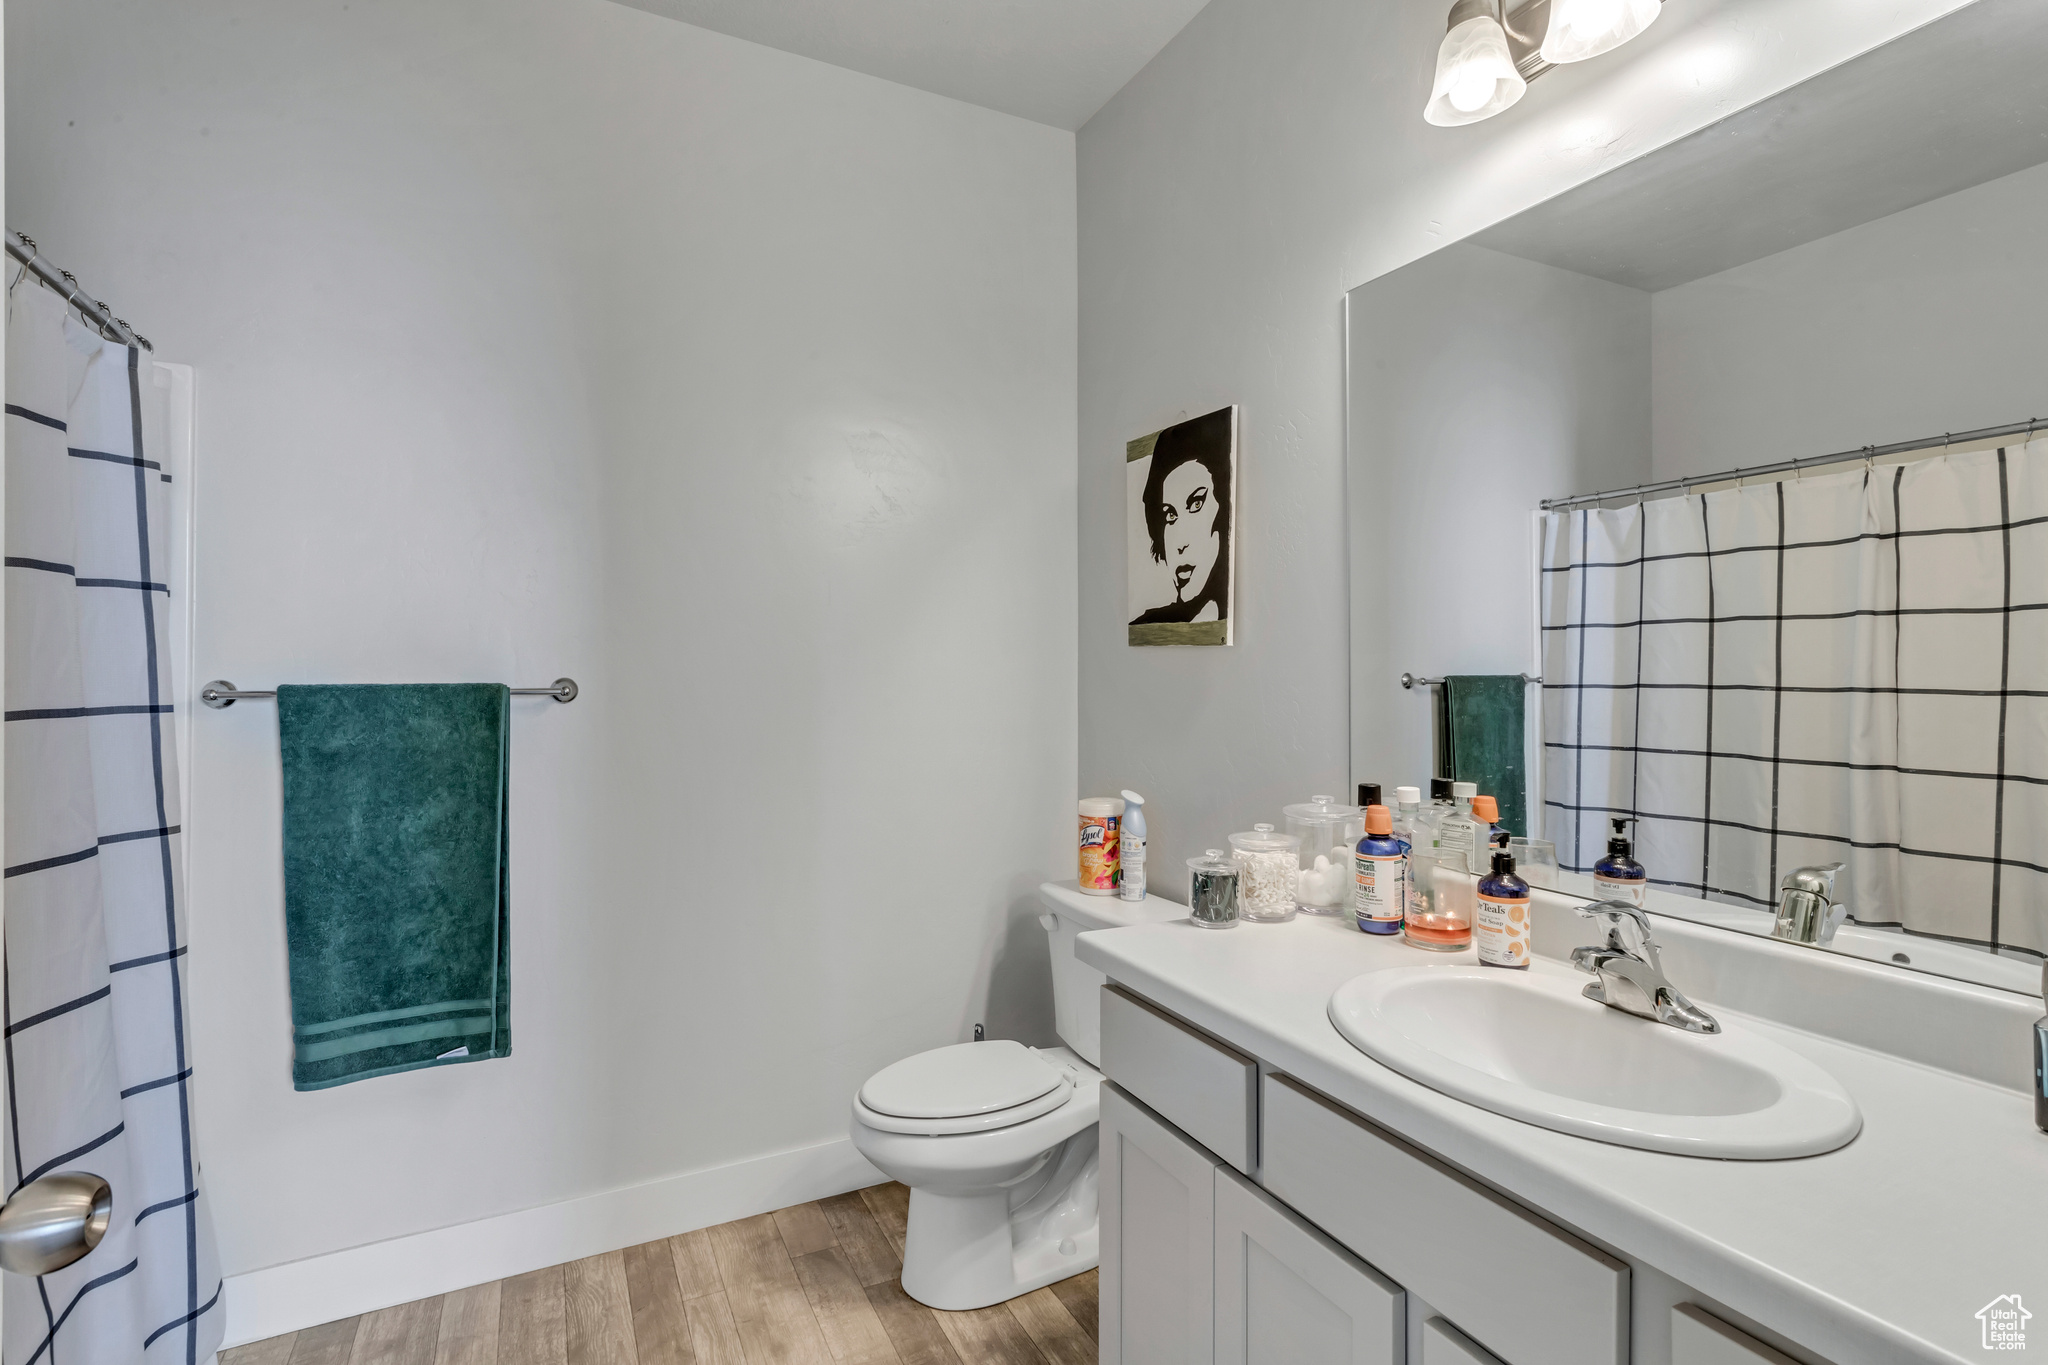 Bathroom featuring large vanity, tasteful backsplash, toilet, and hardwood / wood-style flooring